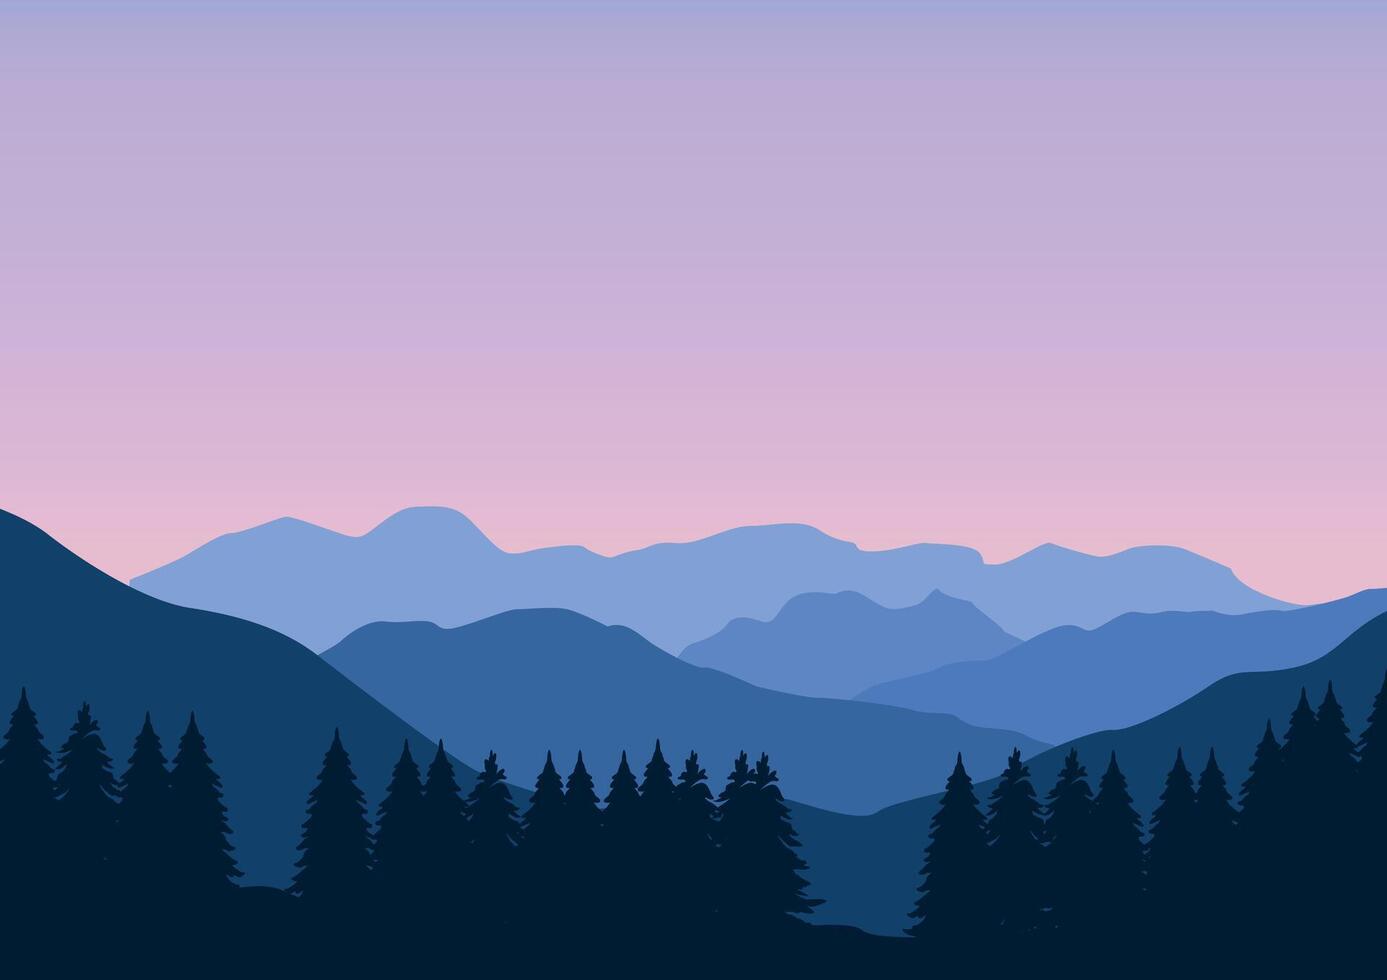 montañas y pino bosque paisaje panorama. ilustración en plano estilo. vector